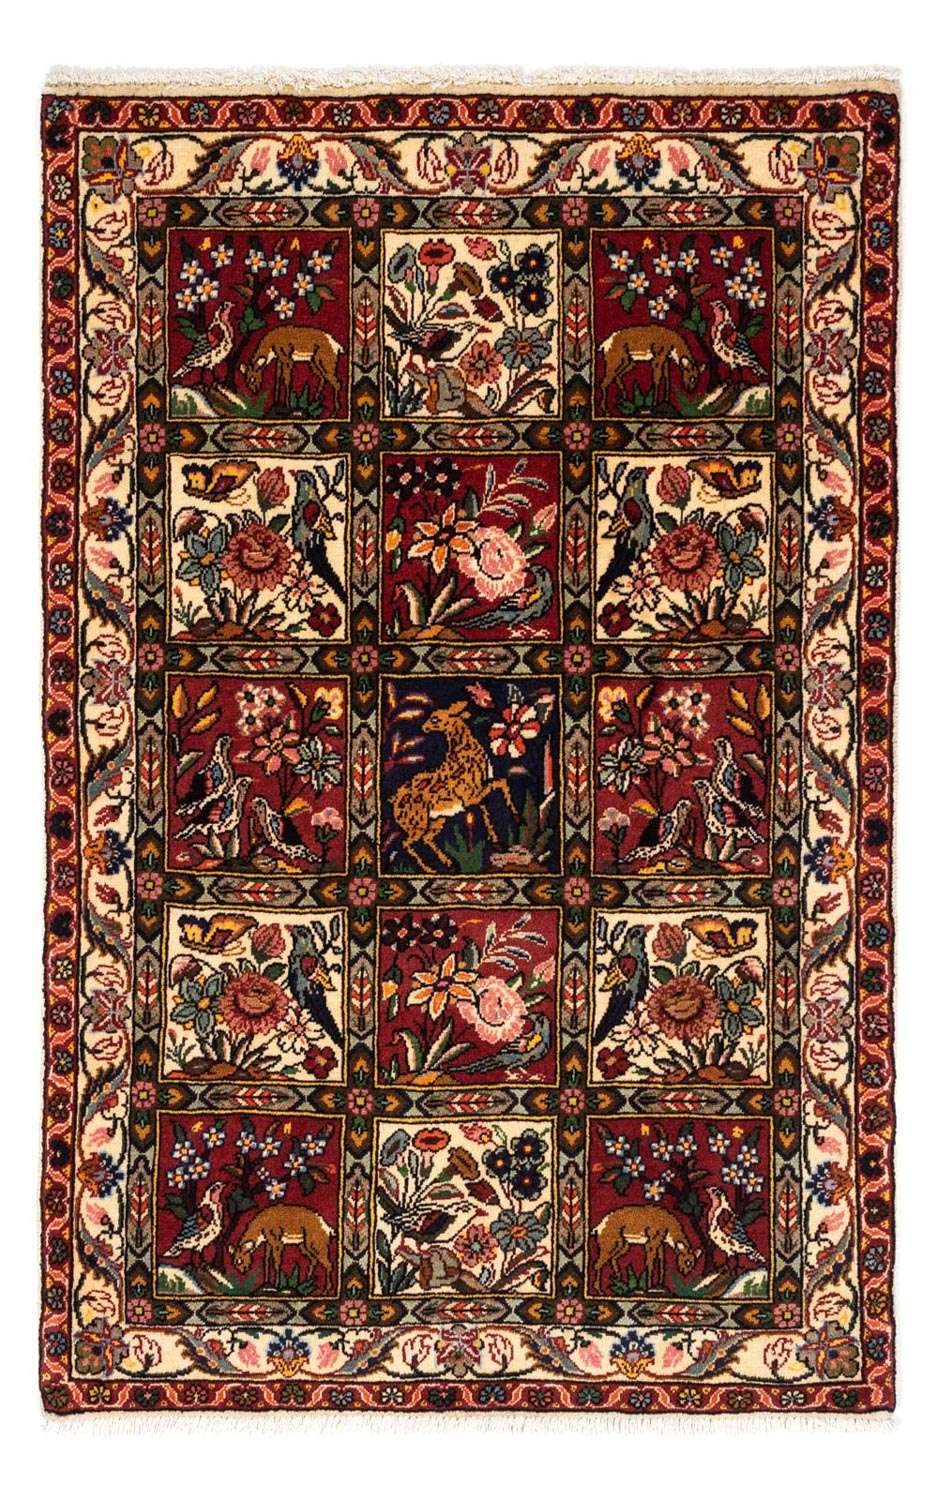 Tapis persan - Nomadic - 150 x 100 cm - multicolore